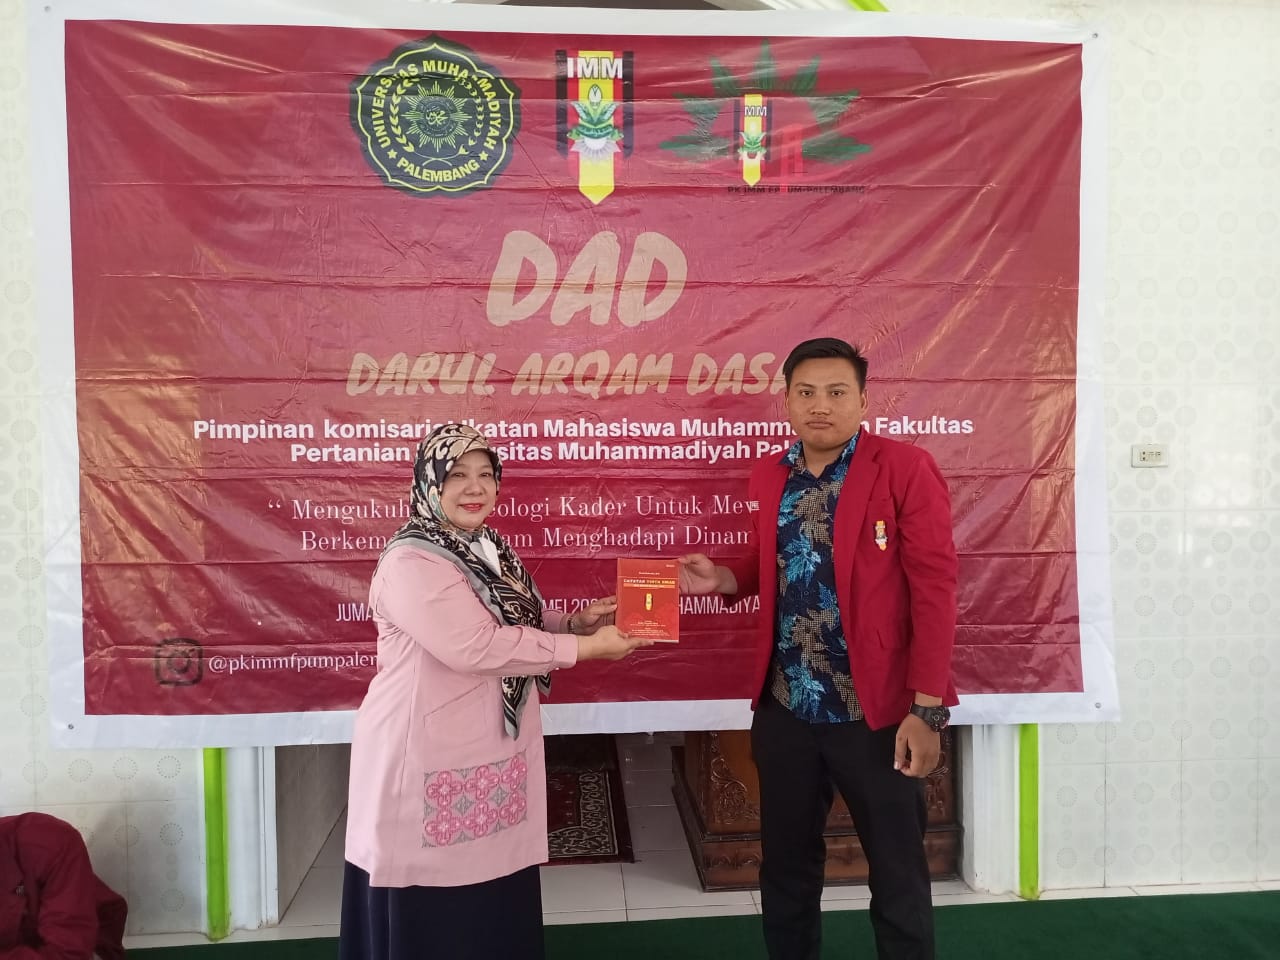 PK IMM FP UM Palembang Menggelar    Darul Arqam Dasar (DAD) di Komplek Gedung SMA Muhammadiyah 8 Pal...